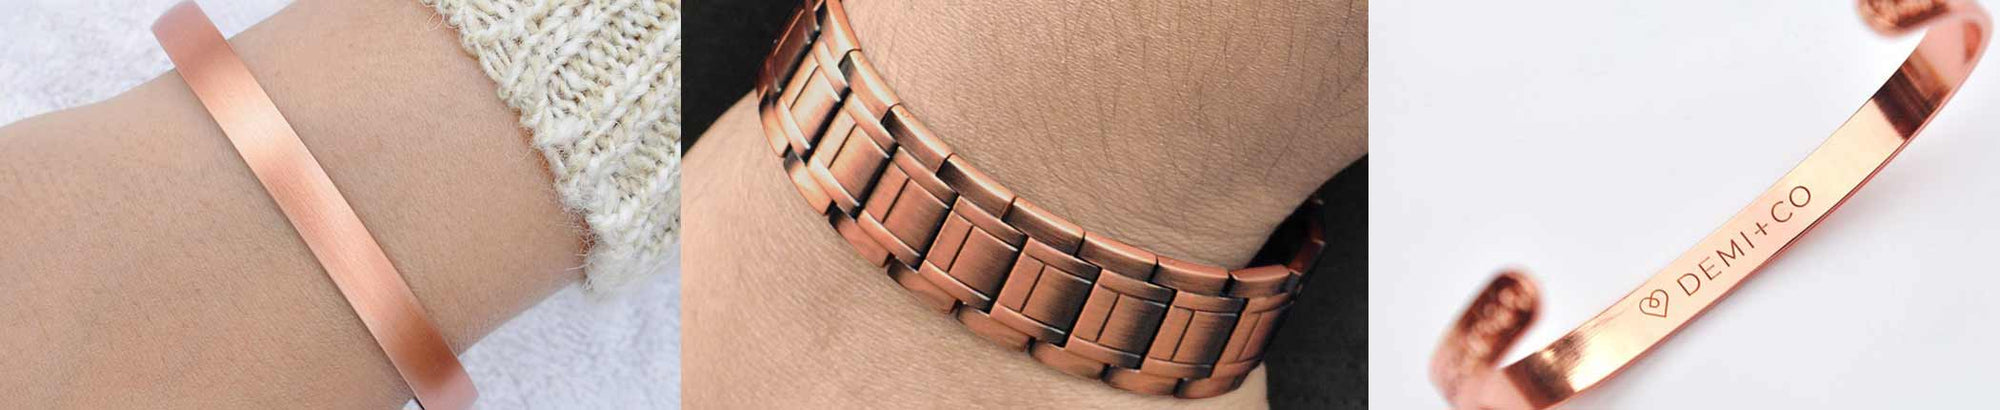 Copper Bracelet; No Magnet vs Magnetic